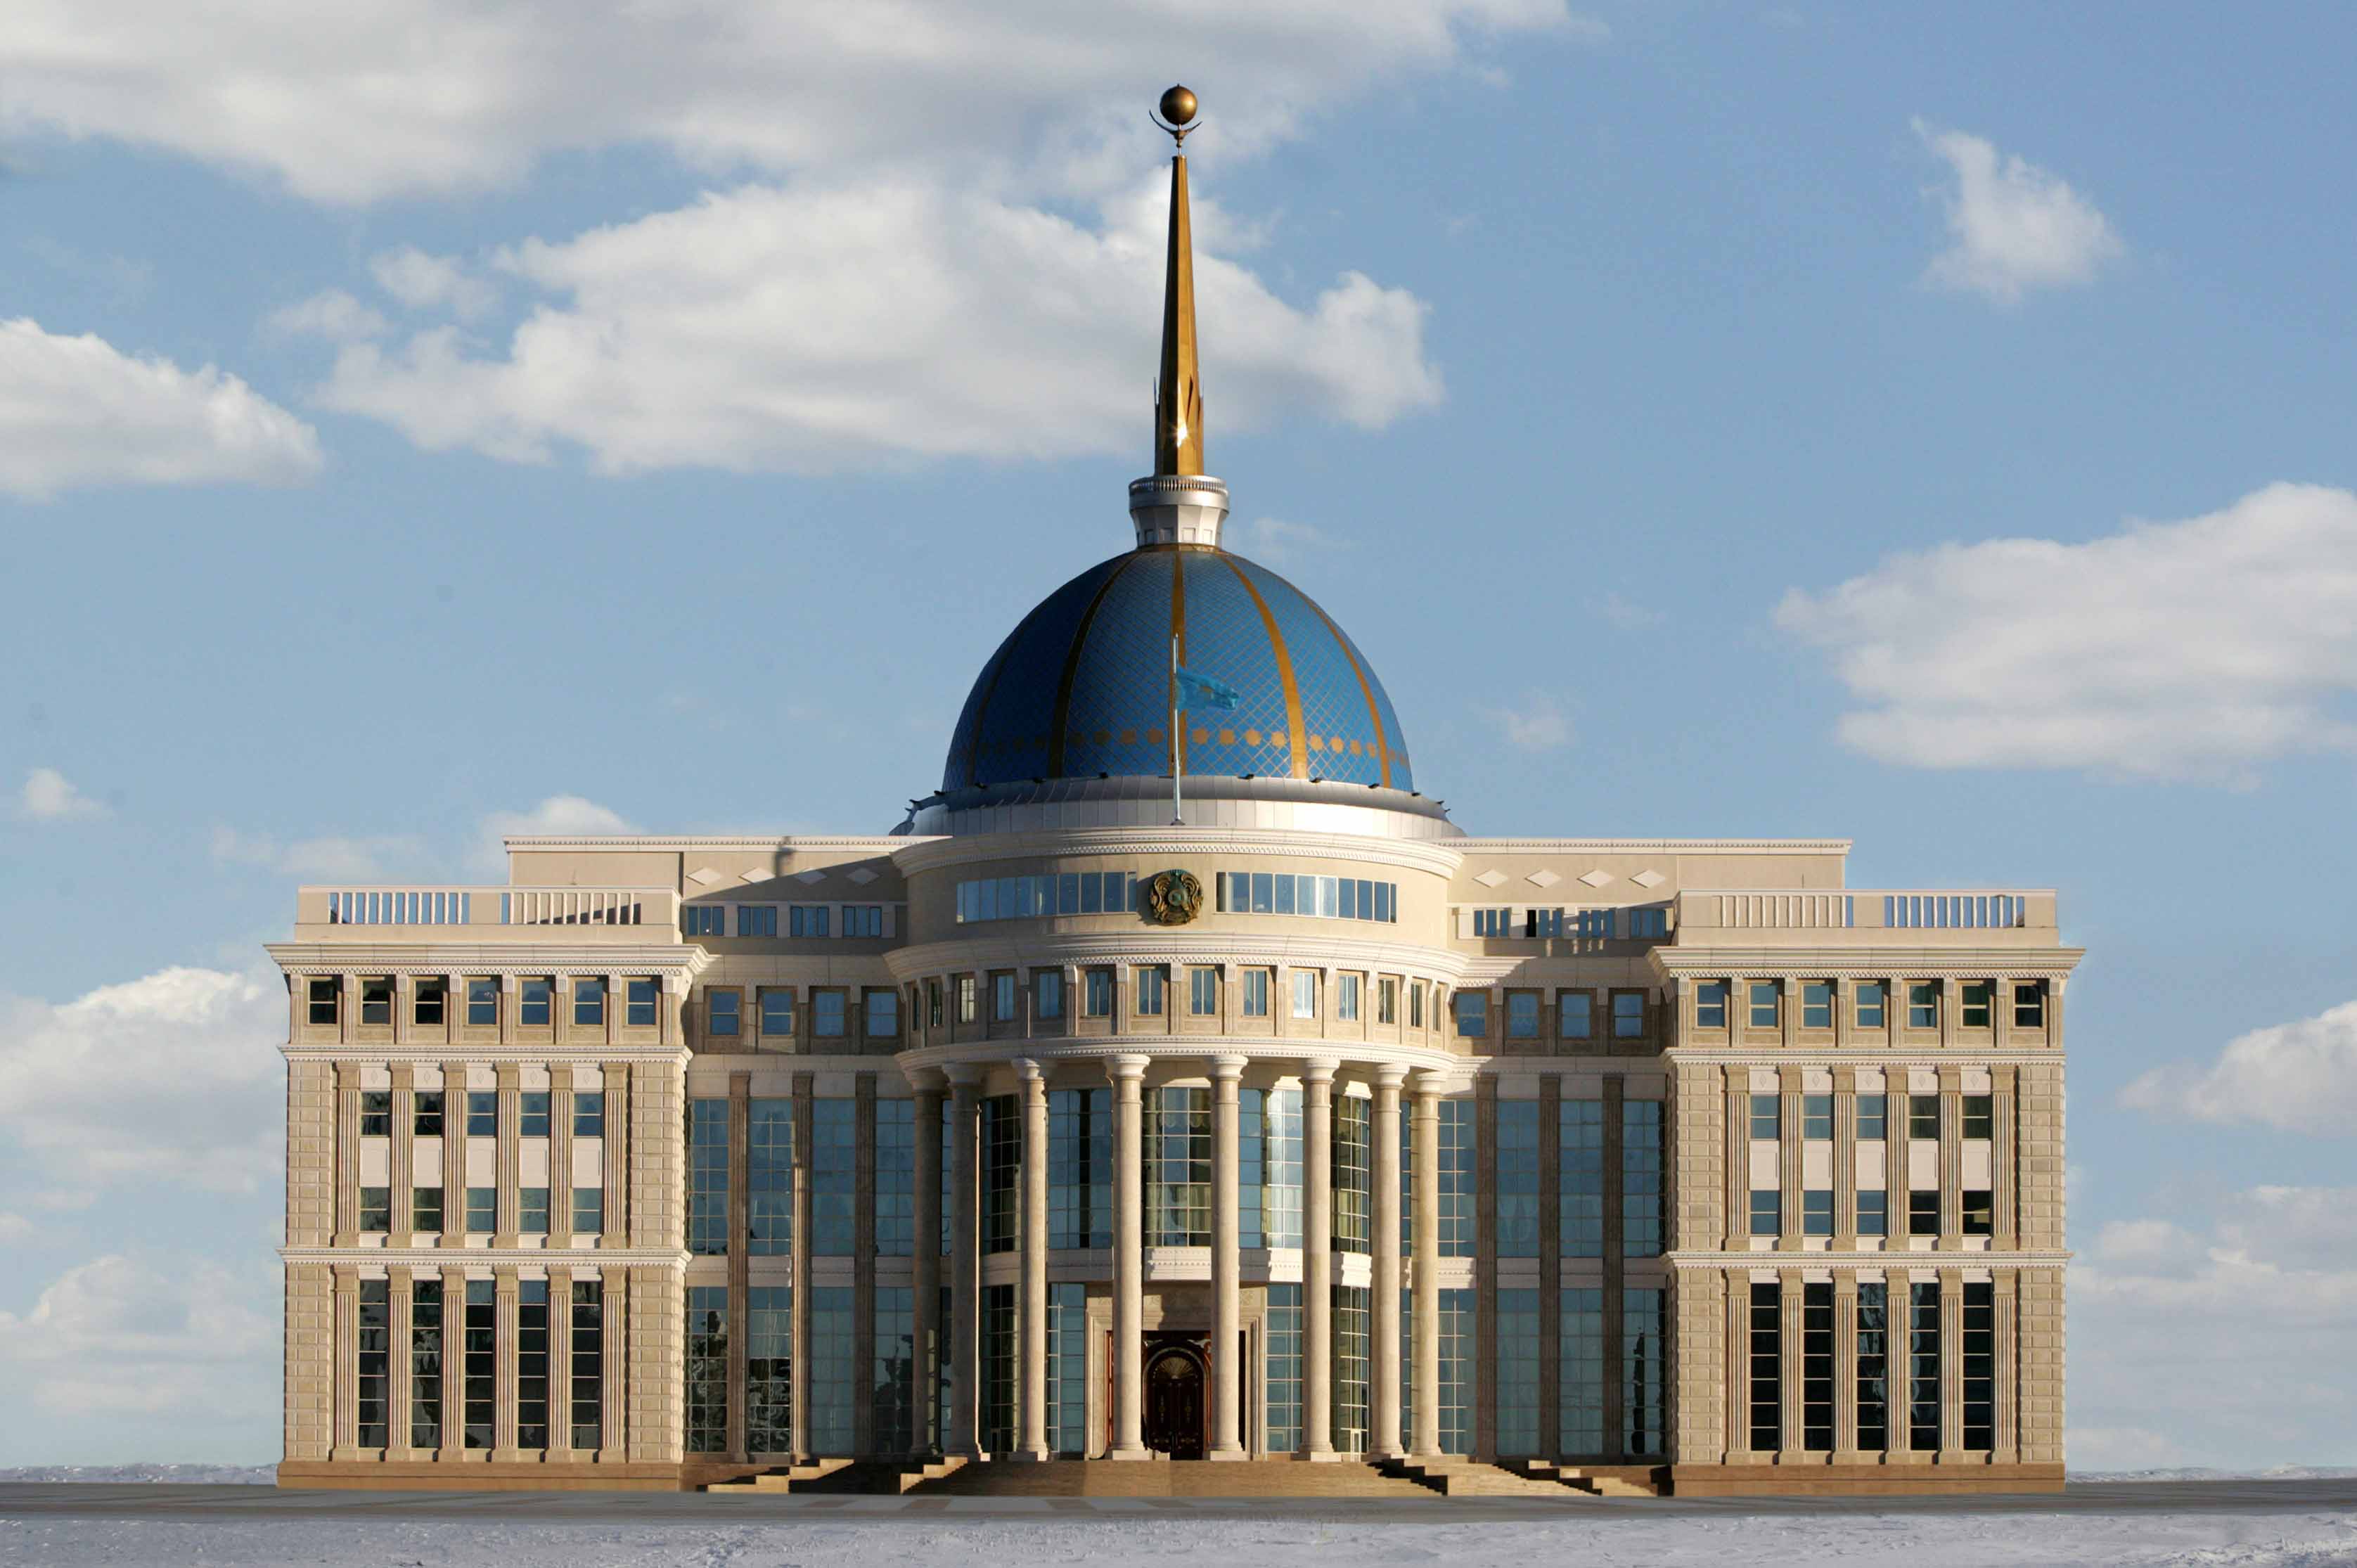 Kazakh President send a telegram of condolences to the President of Ethiopia